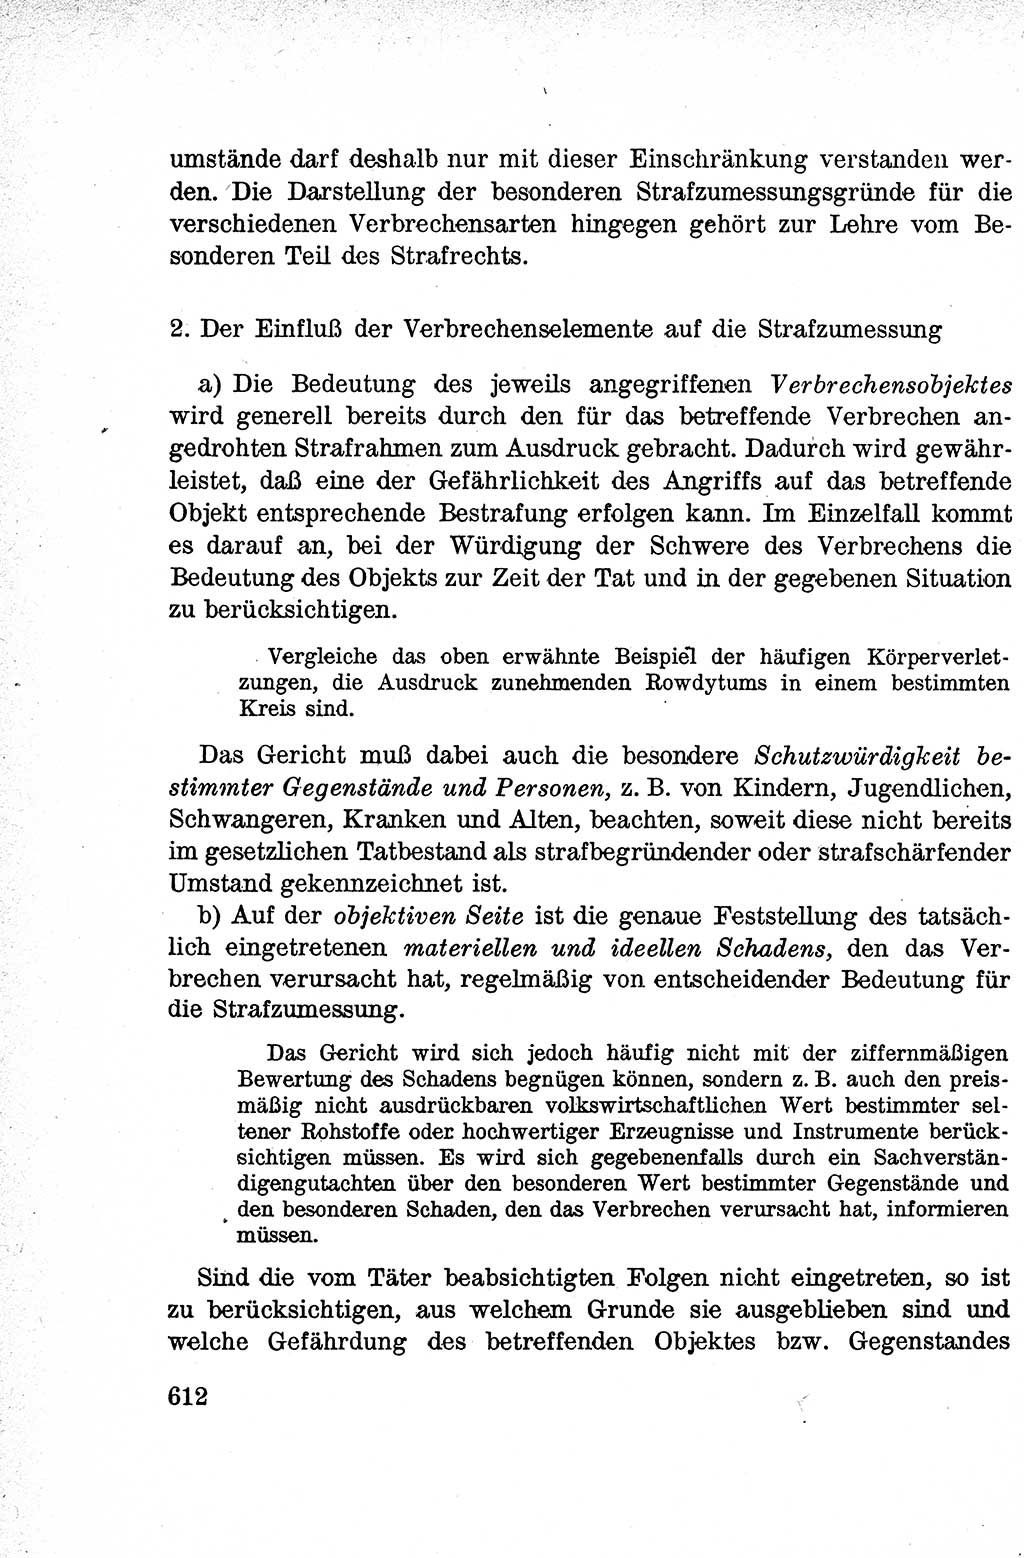 Lehrbuch des Strafrechts der Deutschen Demokratischen Republik (DDR), Allgemeiner Teil 1959, Seite 612 (Lb. Strafr. DDR AT 1959, S. 612)